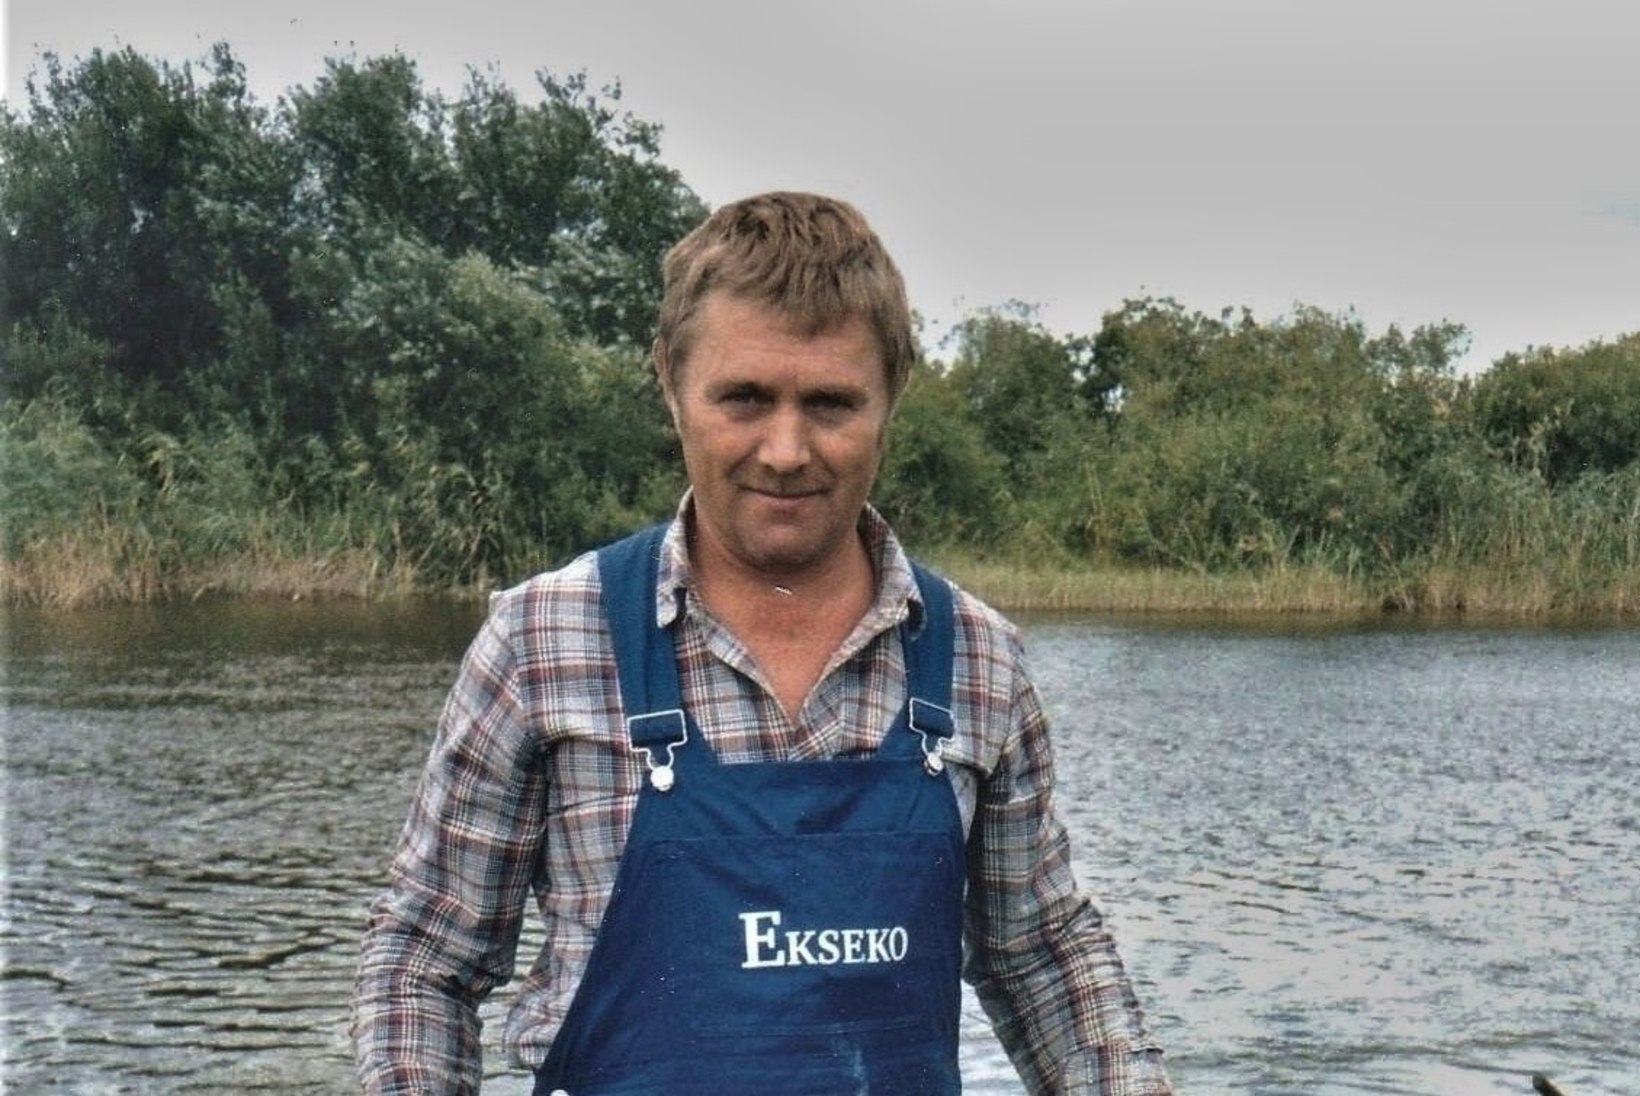 Veterankalamees Viktor Katenevi päevikud 1988: paaril korral sain haugile ligi ja üritasin teda saba poolt kahva võtta, kuid sinna mahtus vaid pool kerest